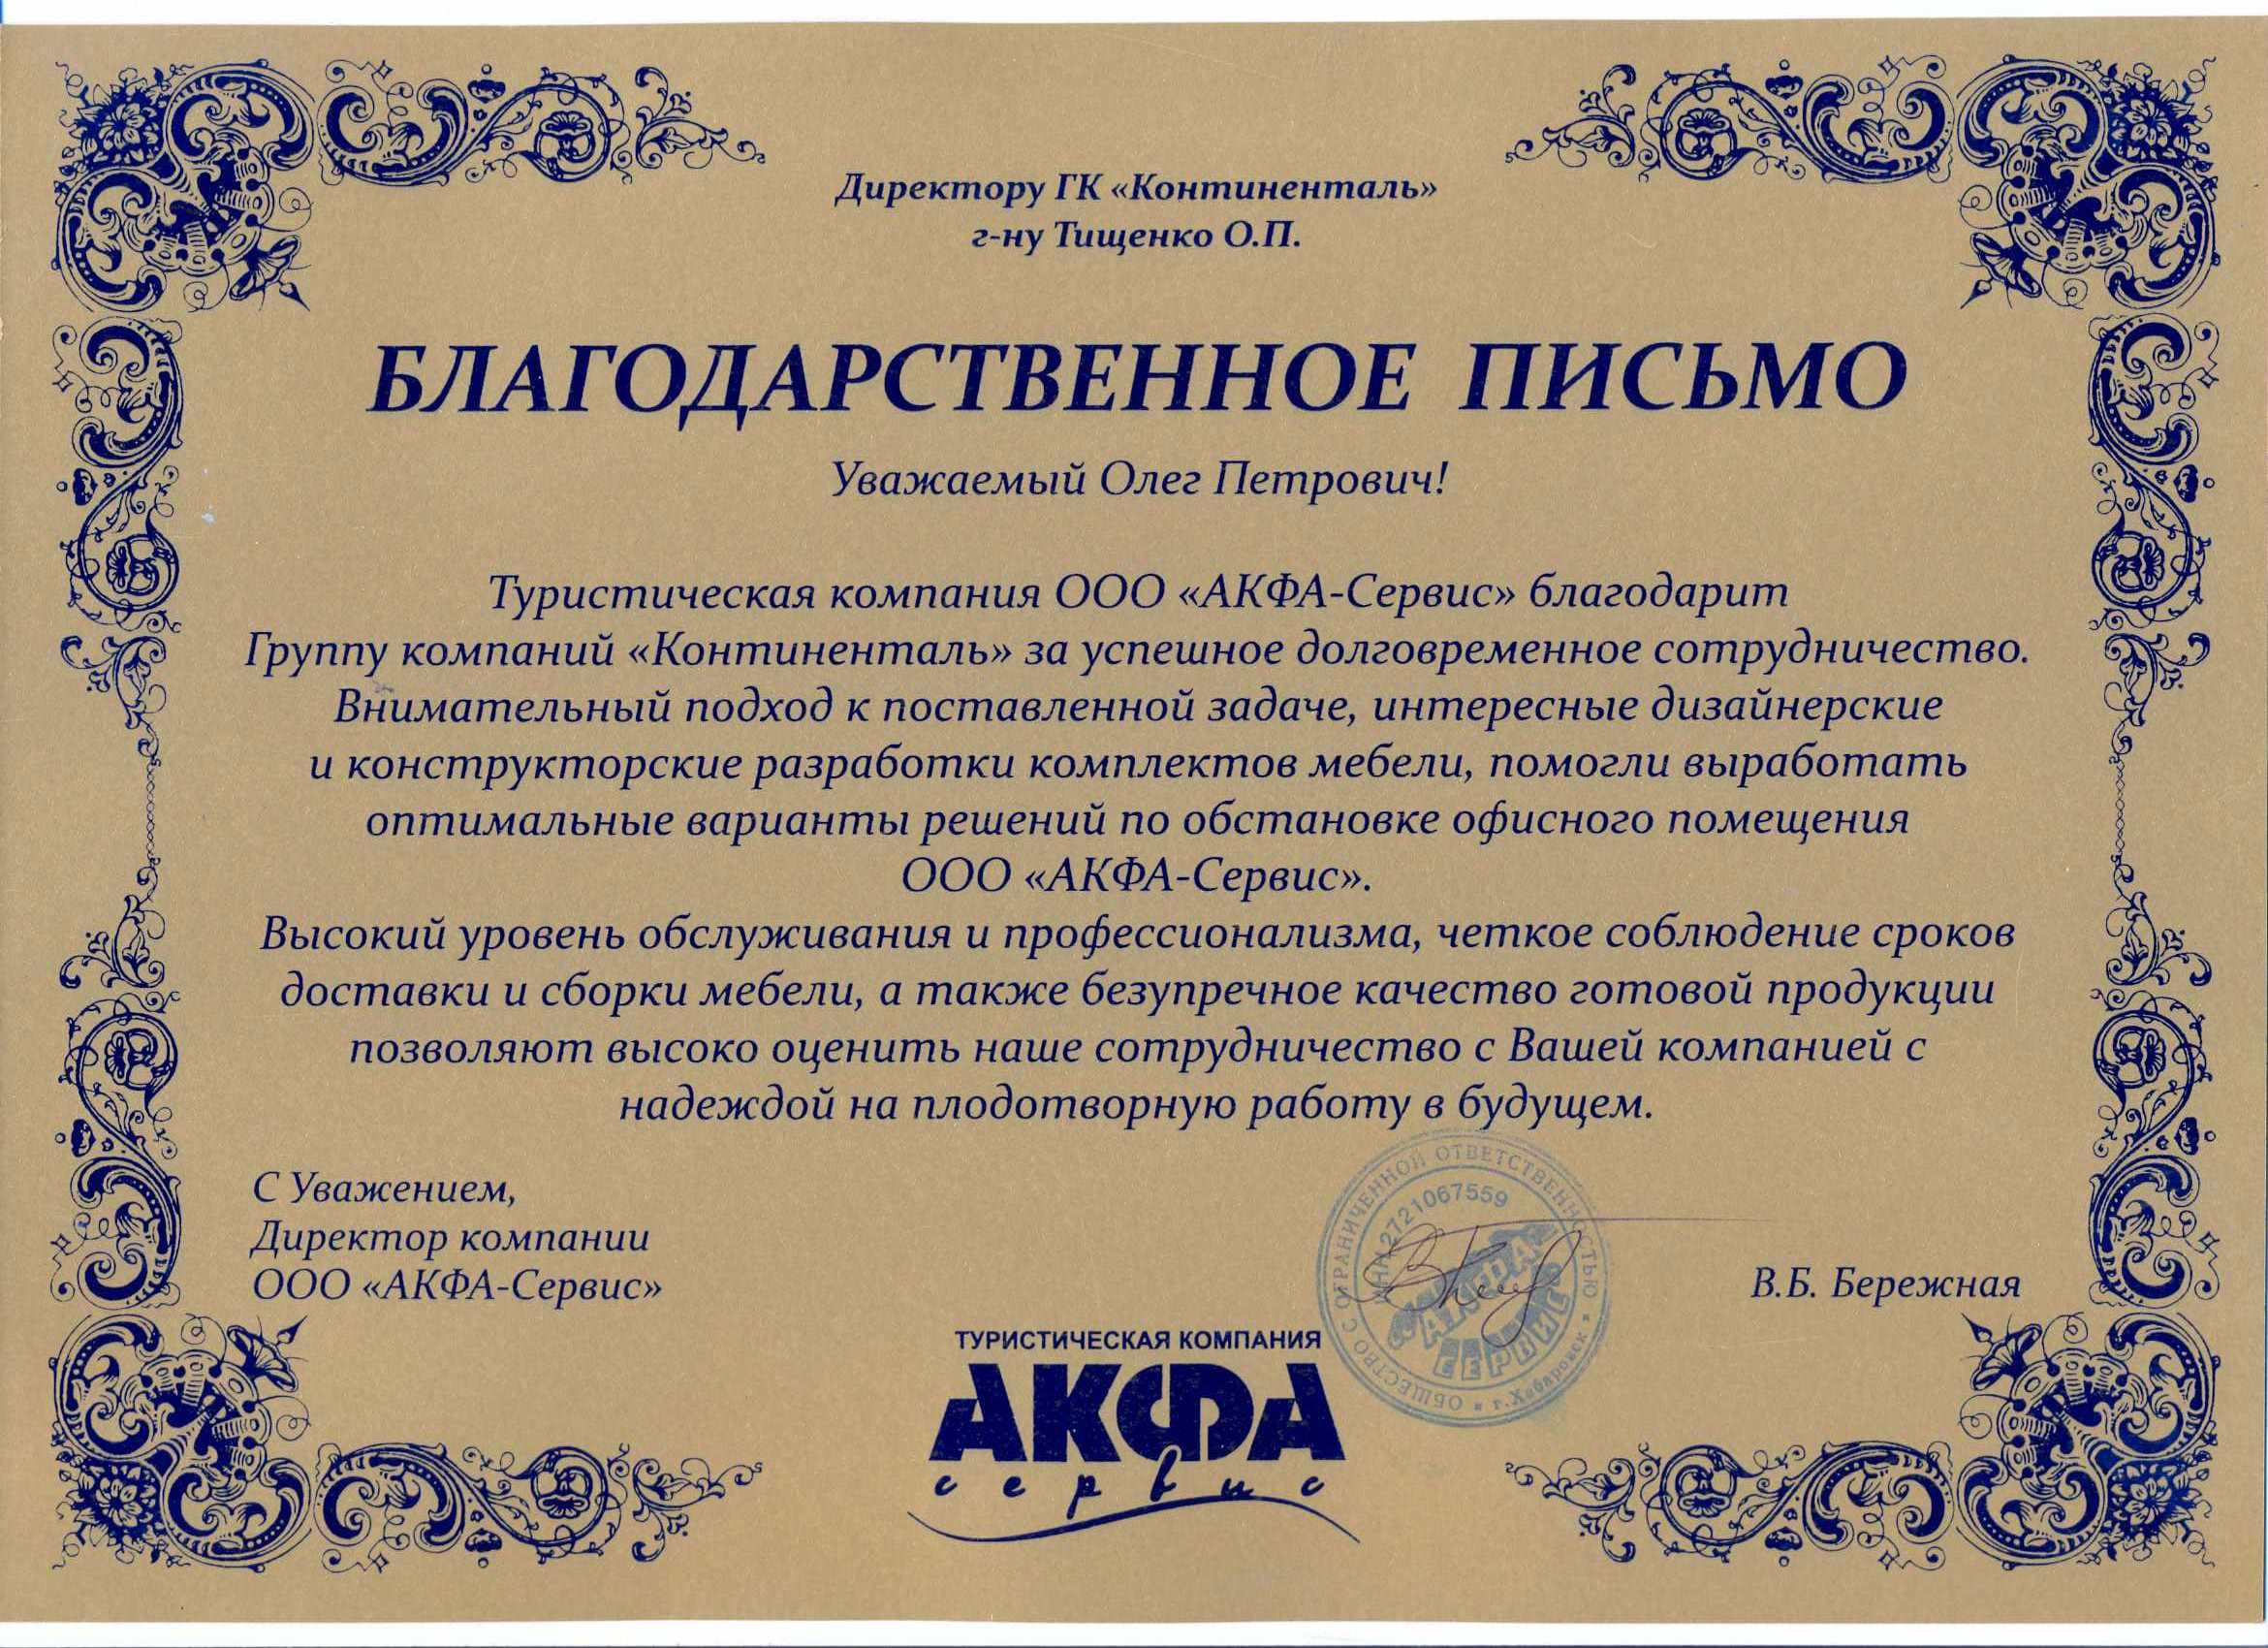 Туристическая компания ООО "АКФА-Сервис" благодарит ГК "Континенталь" за успешное долговременное сотрудничество.